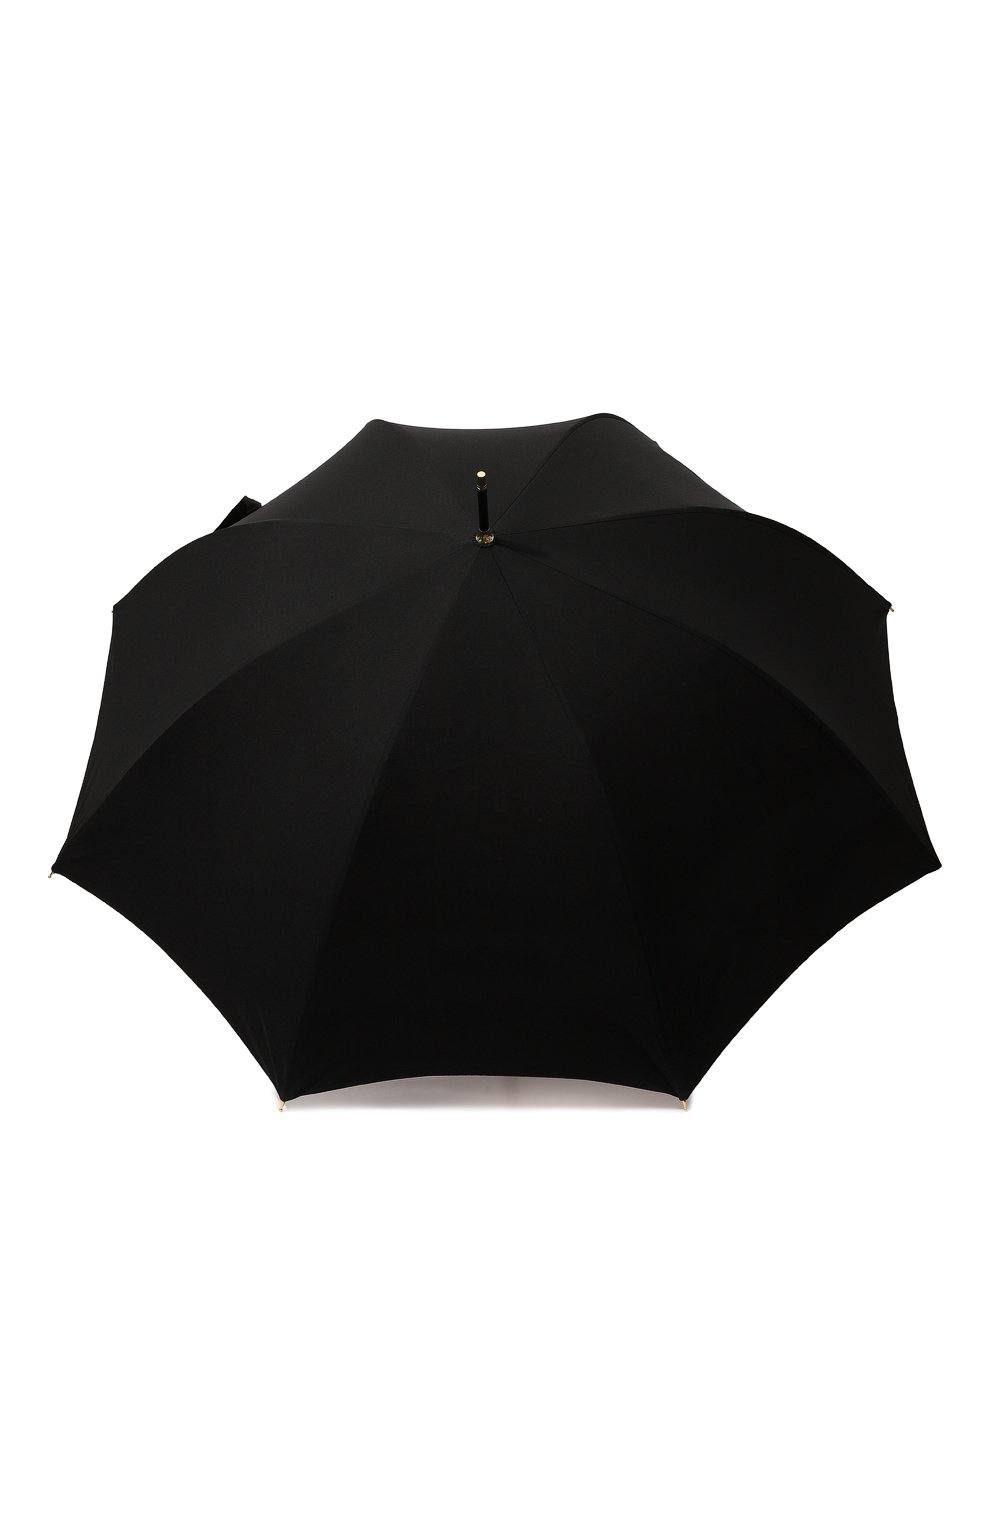 Фото Женский черный зонт-трость MOSCHINO, арт. 8428 D63 AUT0 Китай (Китайская Народная Республика) 8428 D63 AUT0 